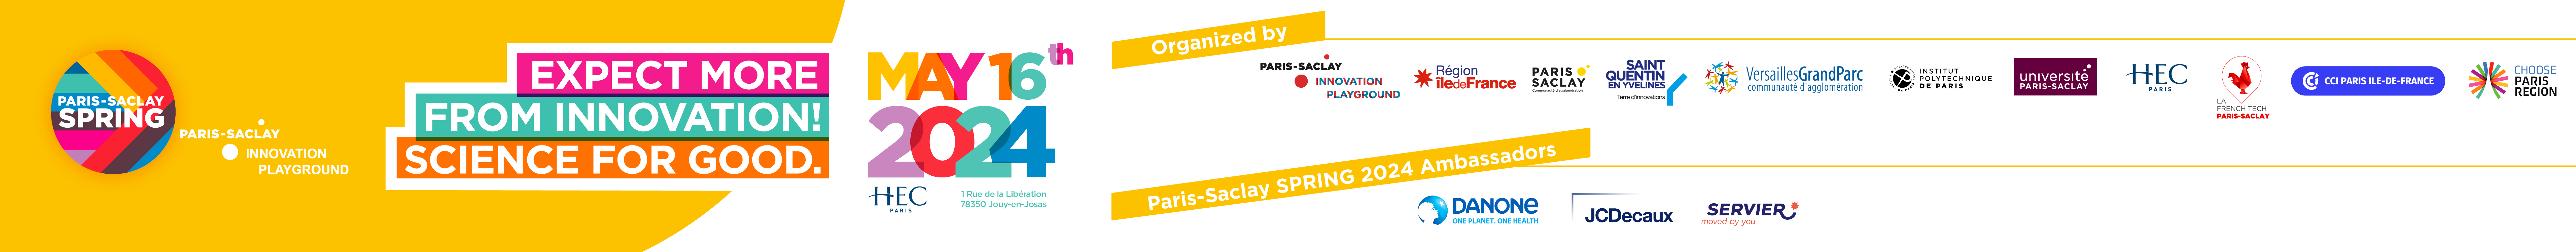 Paris-Saclay SPRING 2024